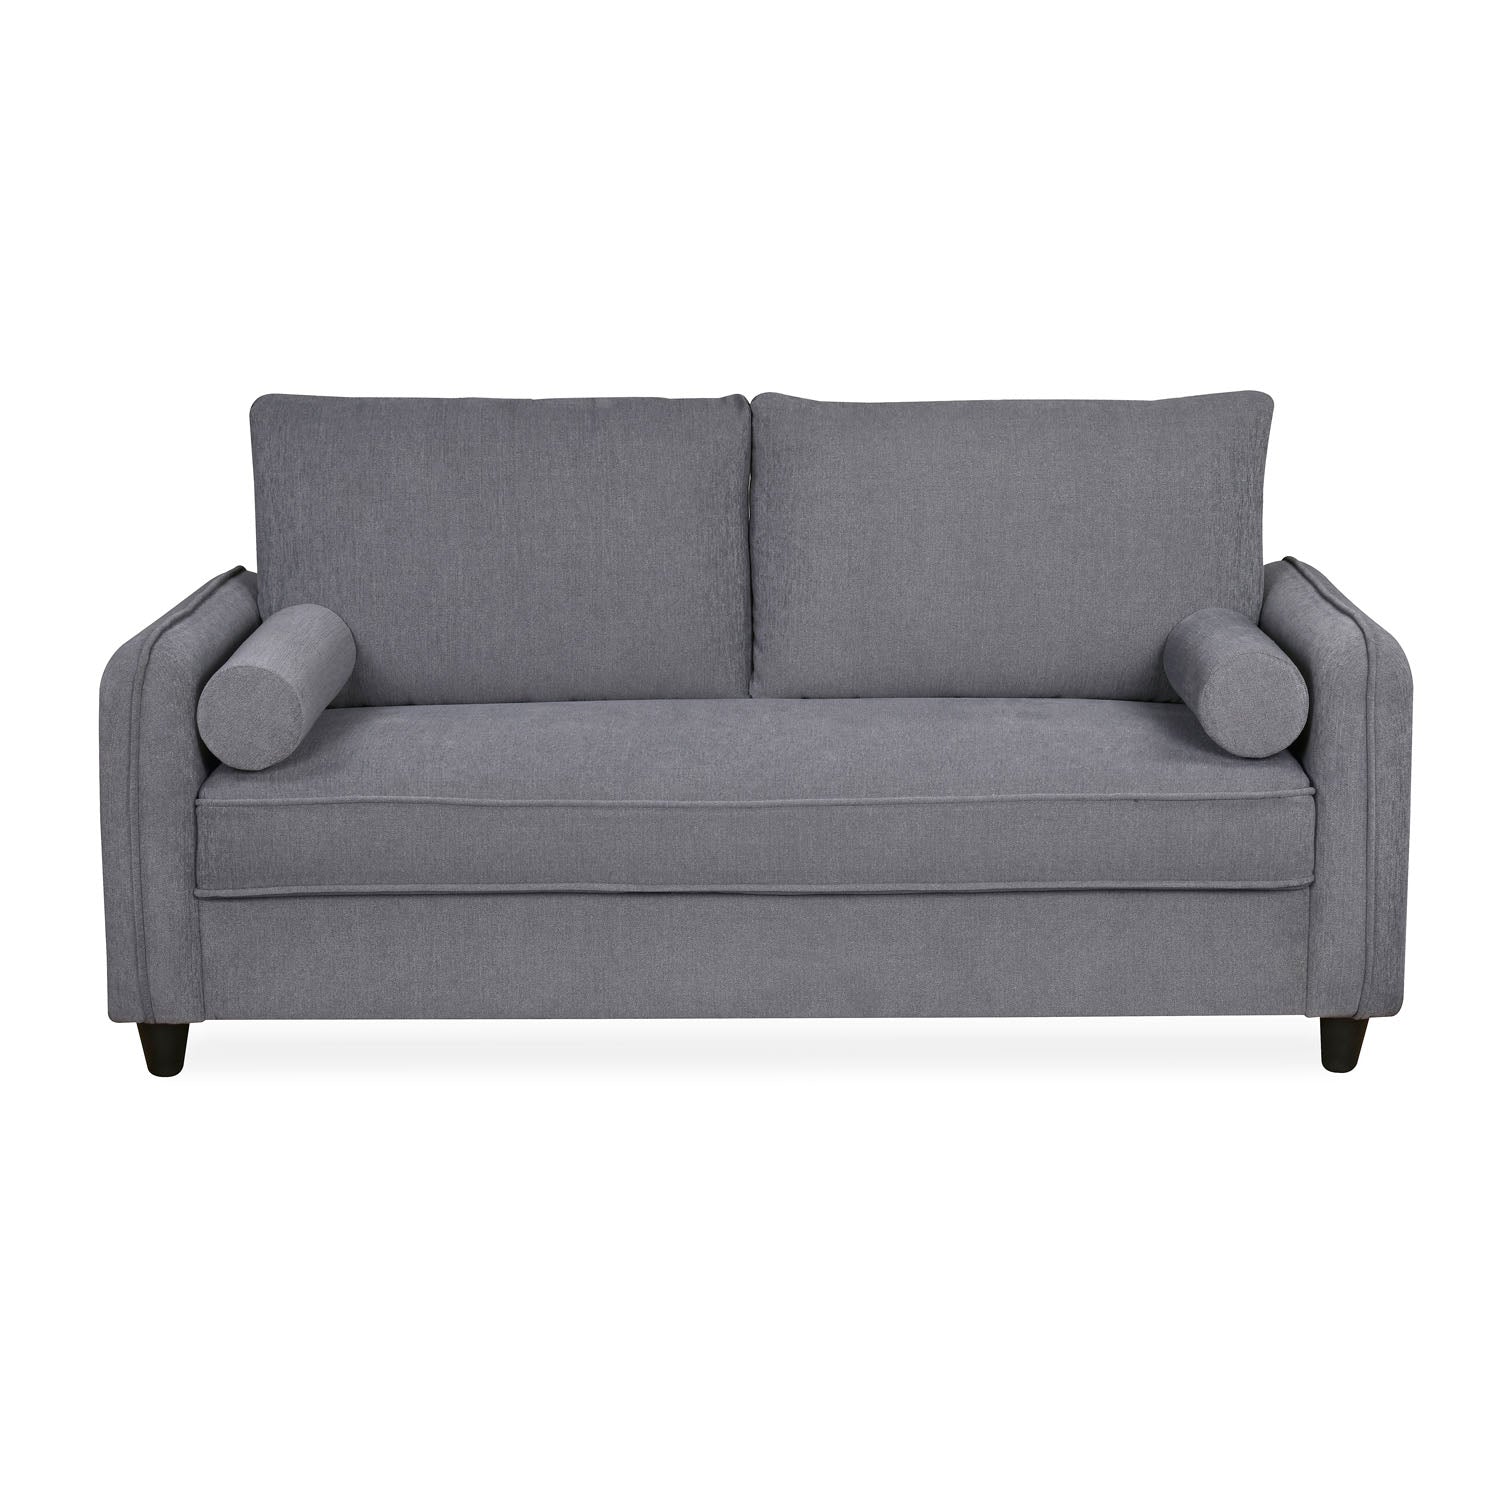 Ryder 3 Seater Sofa (Light Grey)